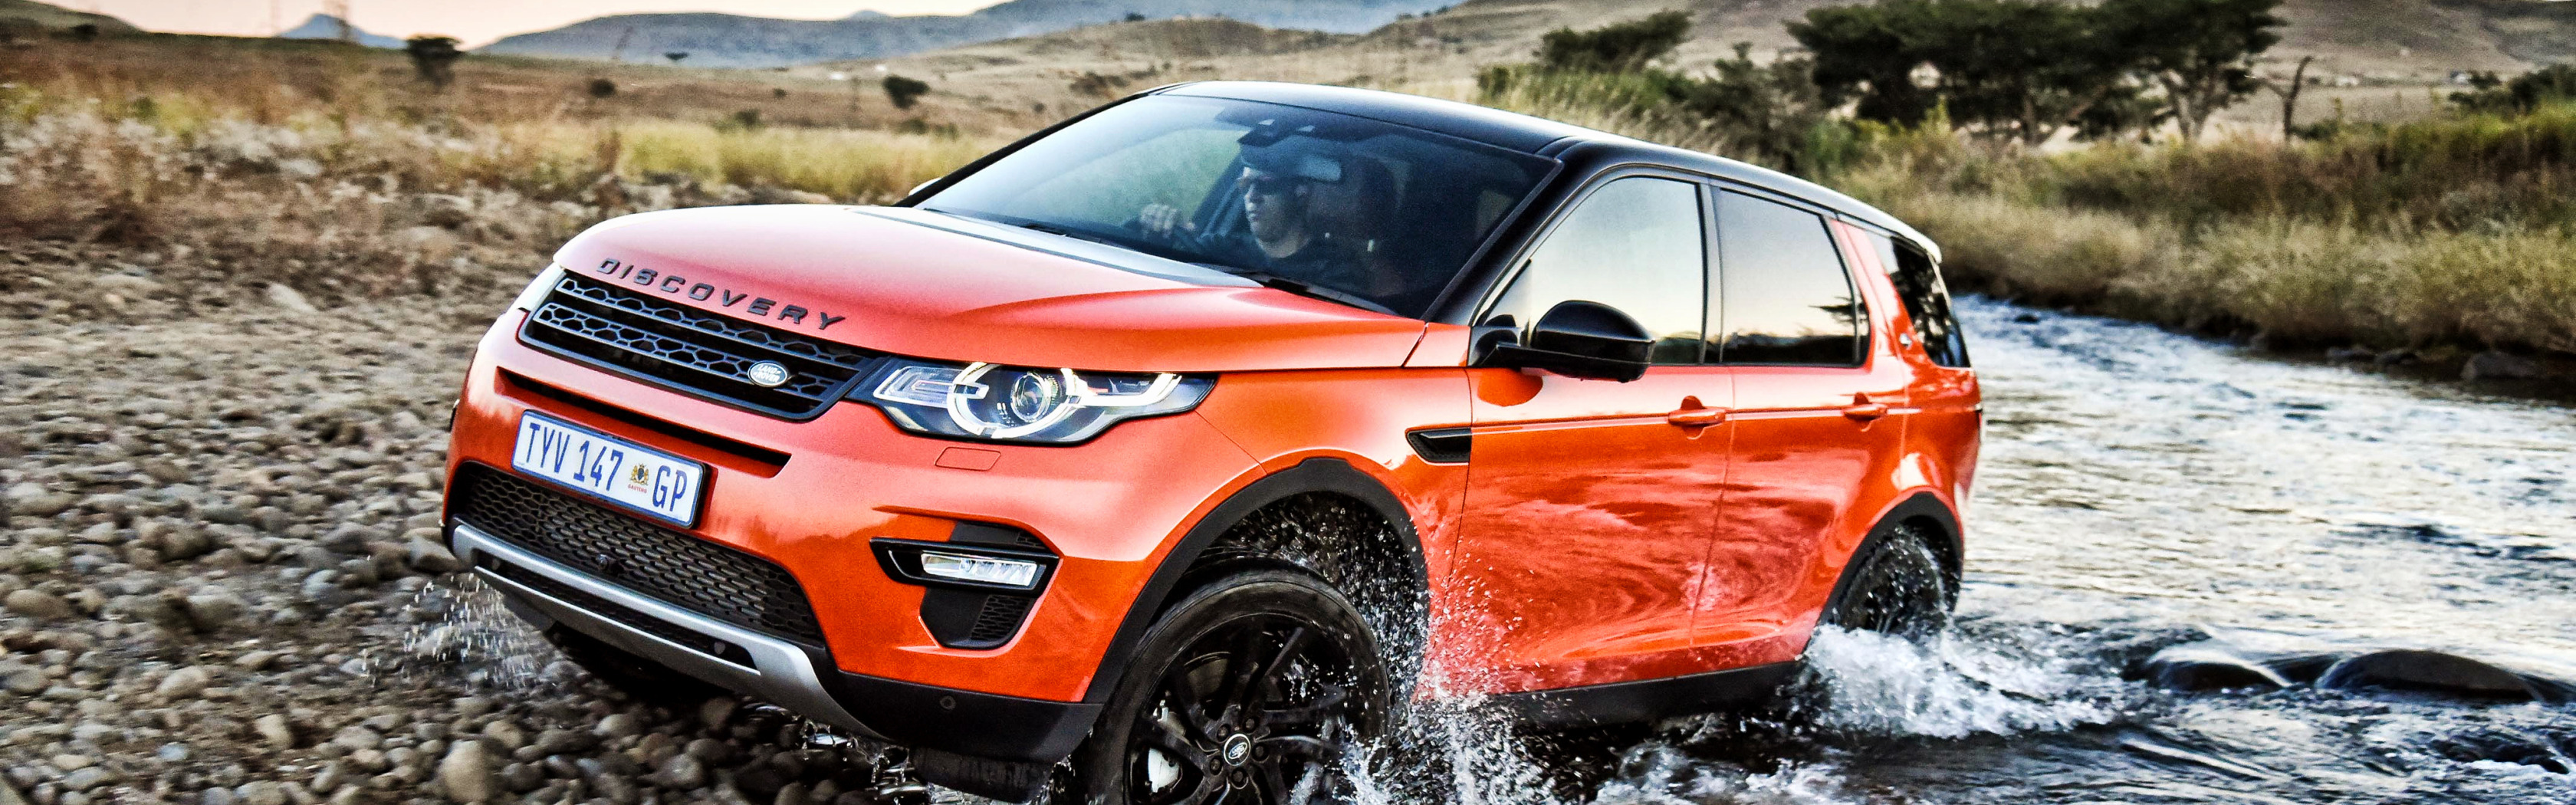 Дискавери 5 дизель. Land Rover Discovery Sport l550. Land Rover Discovery Sport оранжевый. Дискавери спорт 2015 белый. Land Rover Discovery Sport 2 литра бензин.